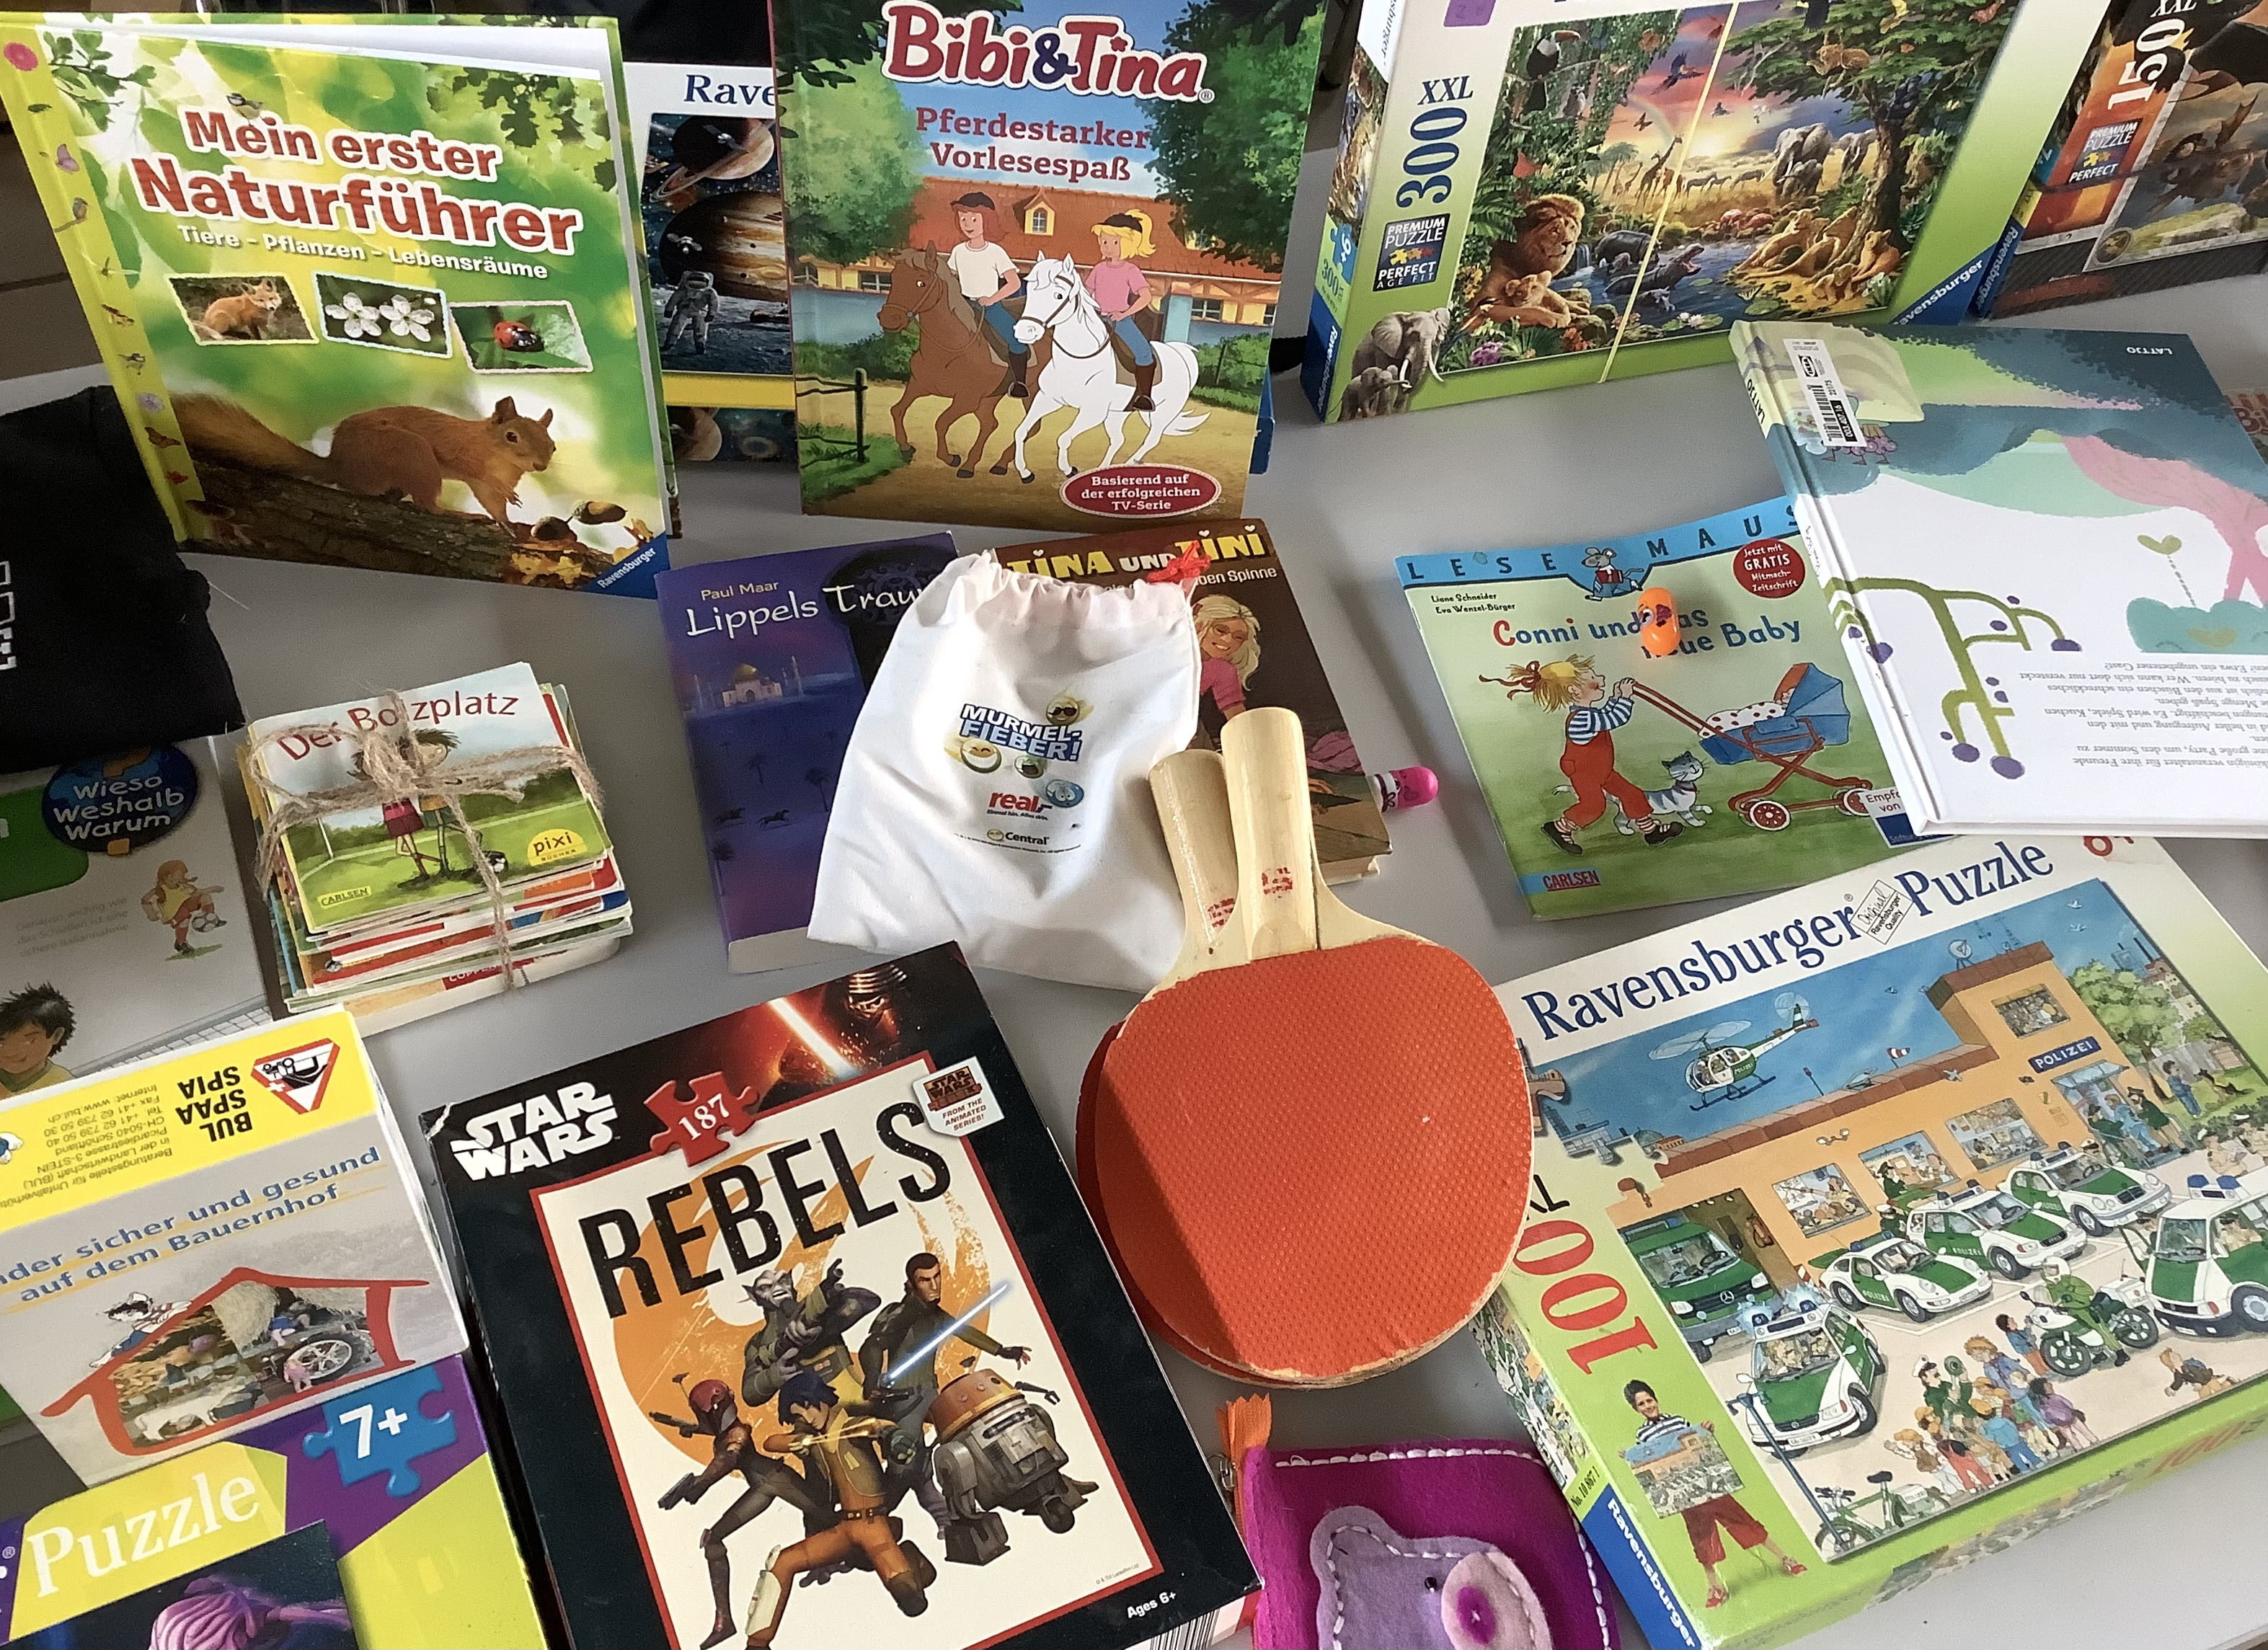 Auf dem Bild sind verschiedene Gegenstände eines Flohmarktstandes abgebildet, wie Puzzles, Kinderbücher oder Tischtennisschläger. 